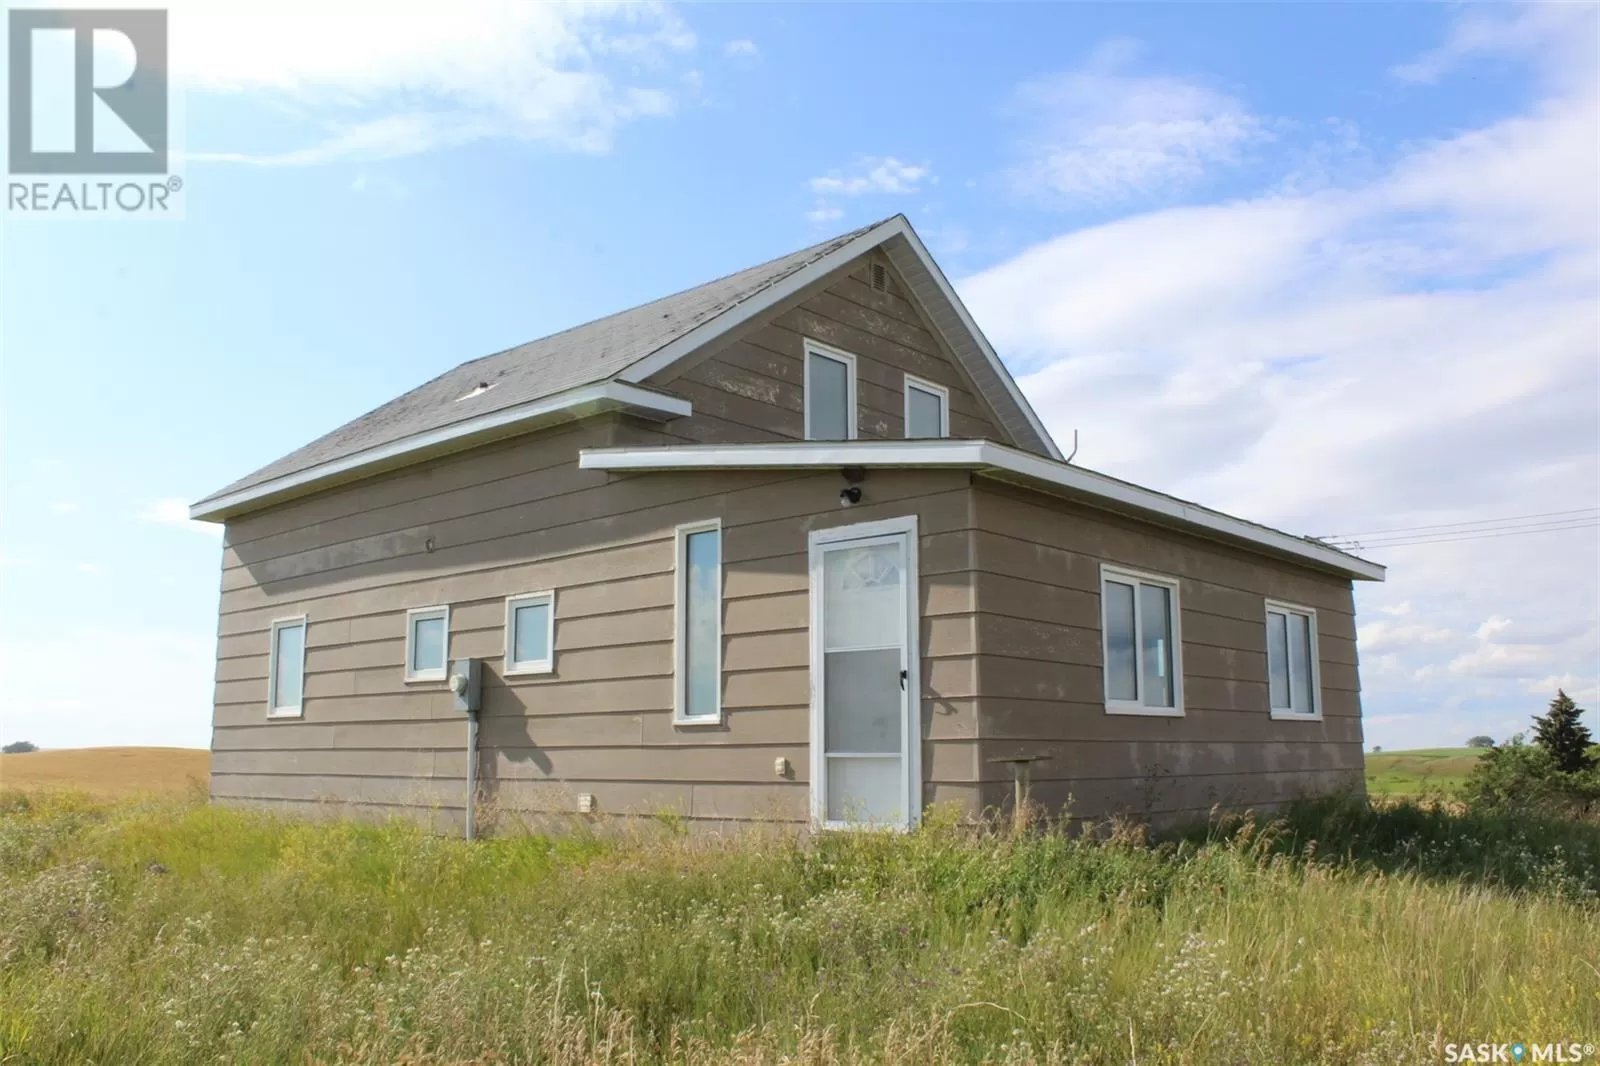 House for rent: Oungre Acreage Rm Souris Valley #7 2 Storey, Oungre, Saskatchewan S0C 1Z0